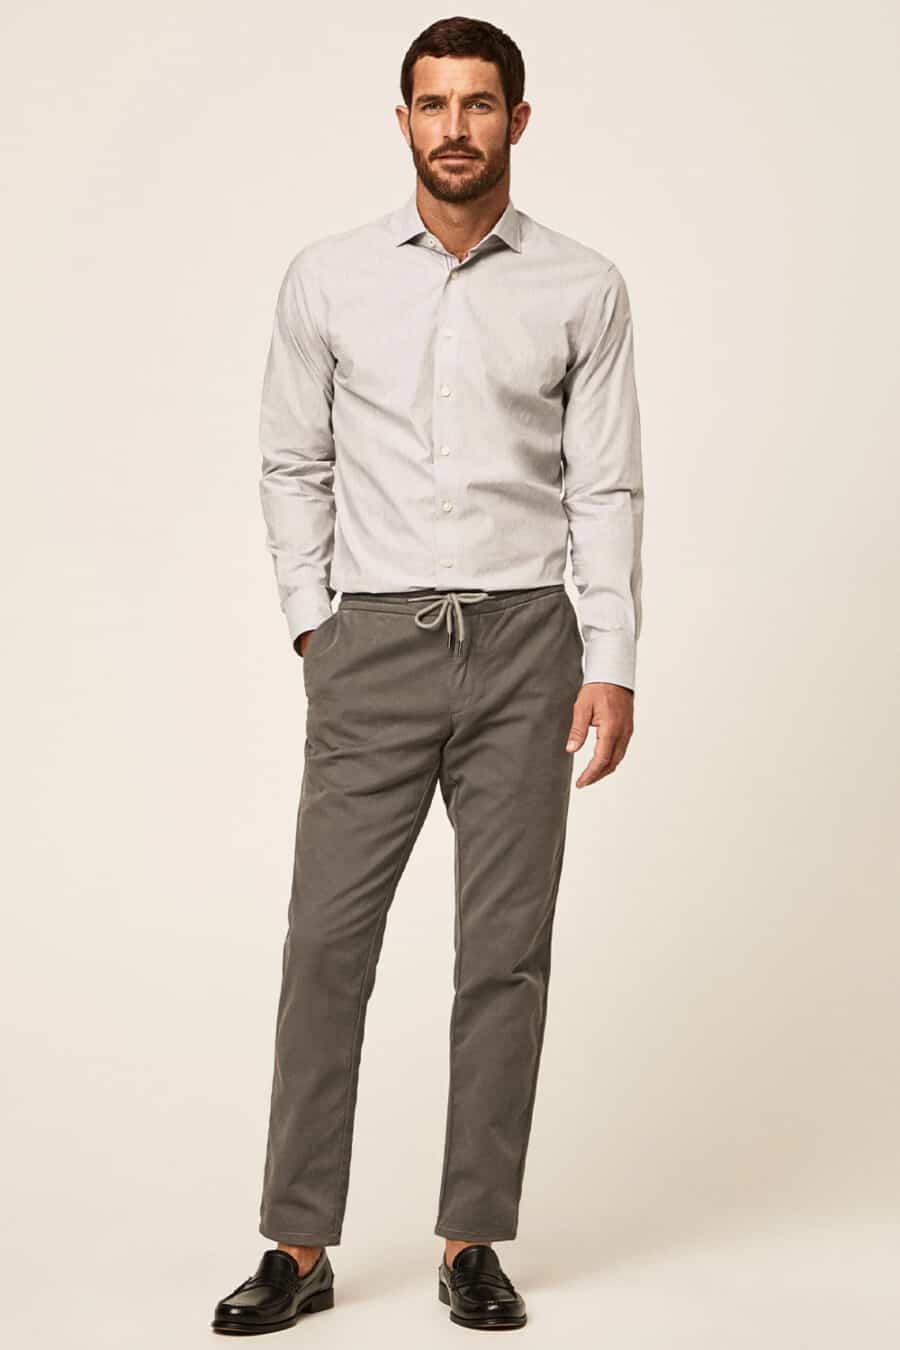 Beige Pants Grey Shirt Brown Suede Stock Photo 565196068  Shutterstock